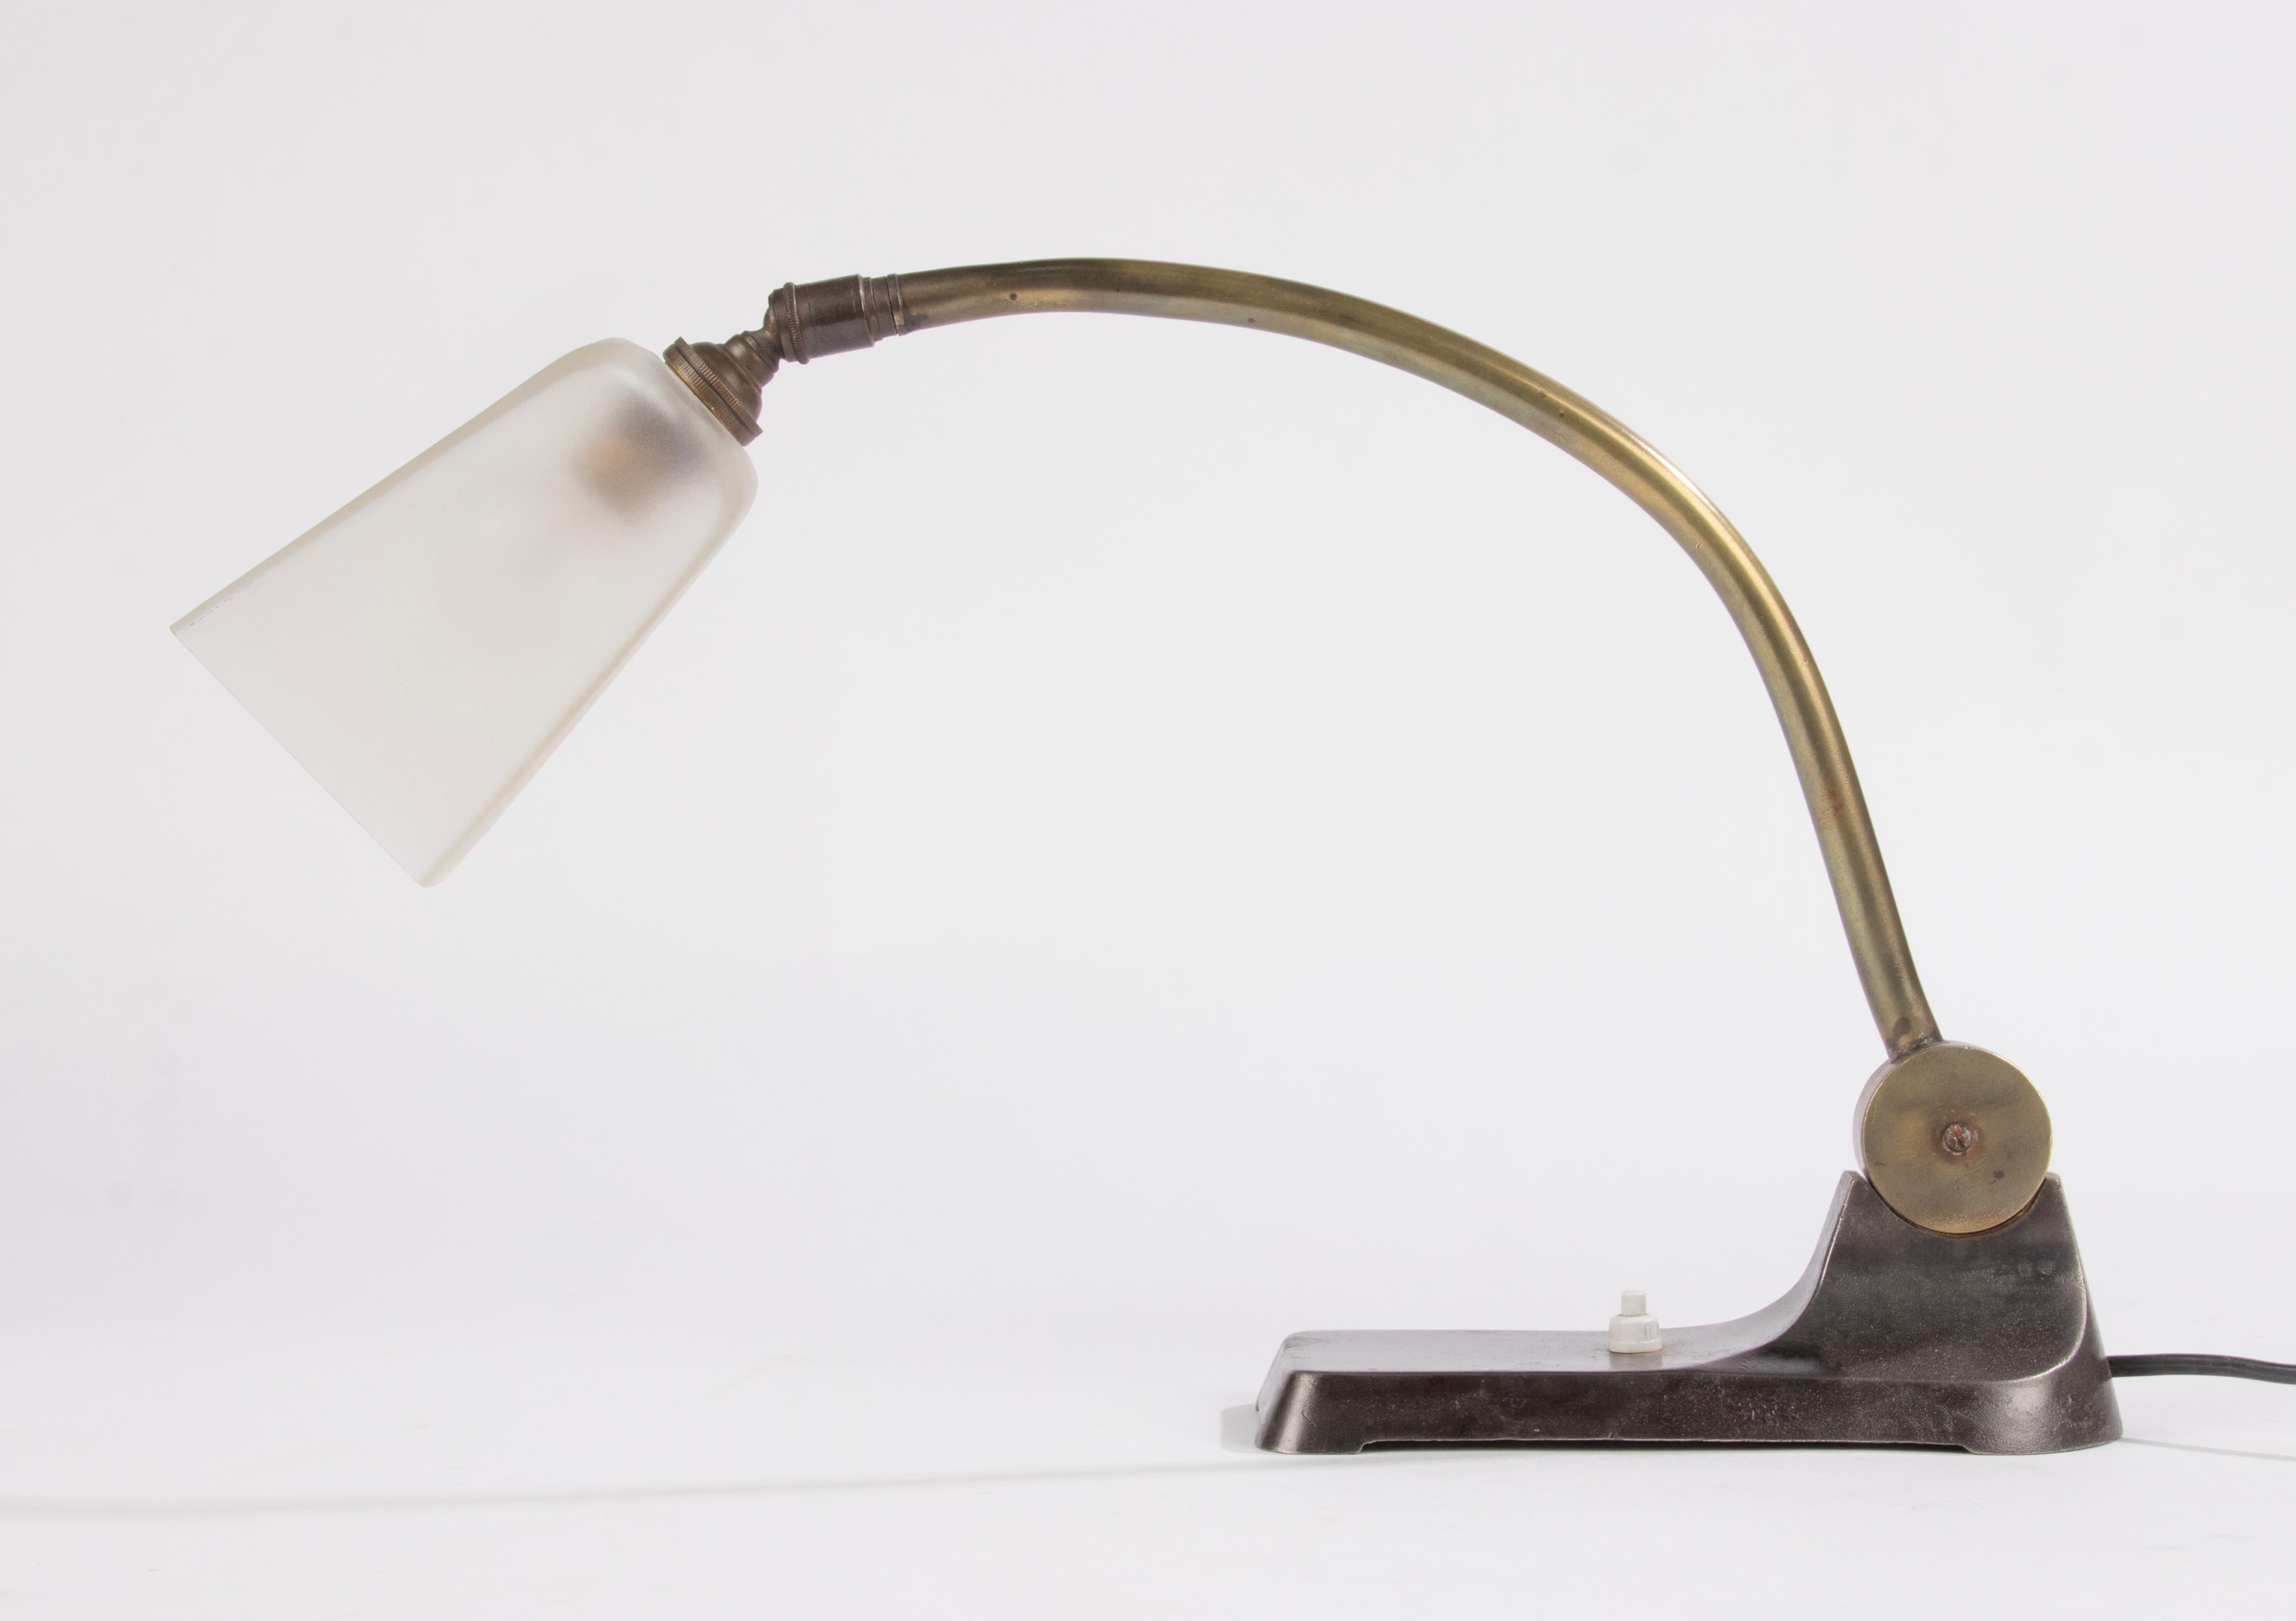 Belle lampe de bureau Art Déco de style industriel. La base est en fonte, le bras est en bronze et est réglable. L'abat-jour est en verre aseptisé. 
La lampe fonctionne et est en bon état, avec une belle patine d'origine. 

